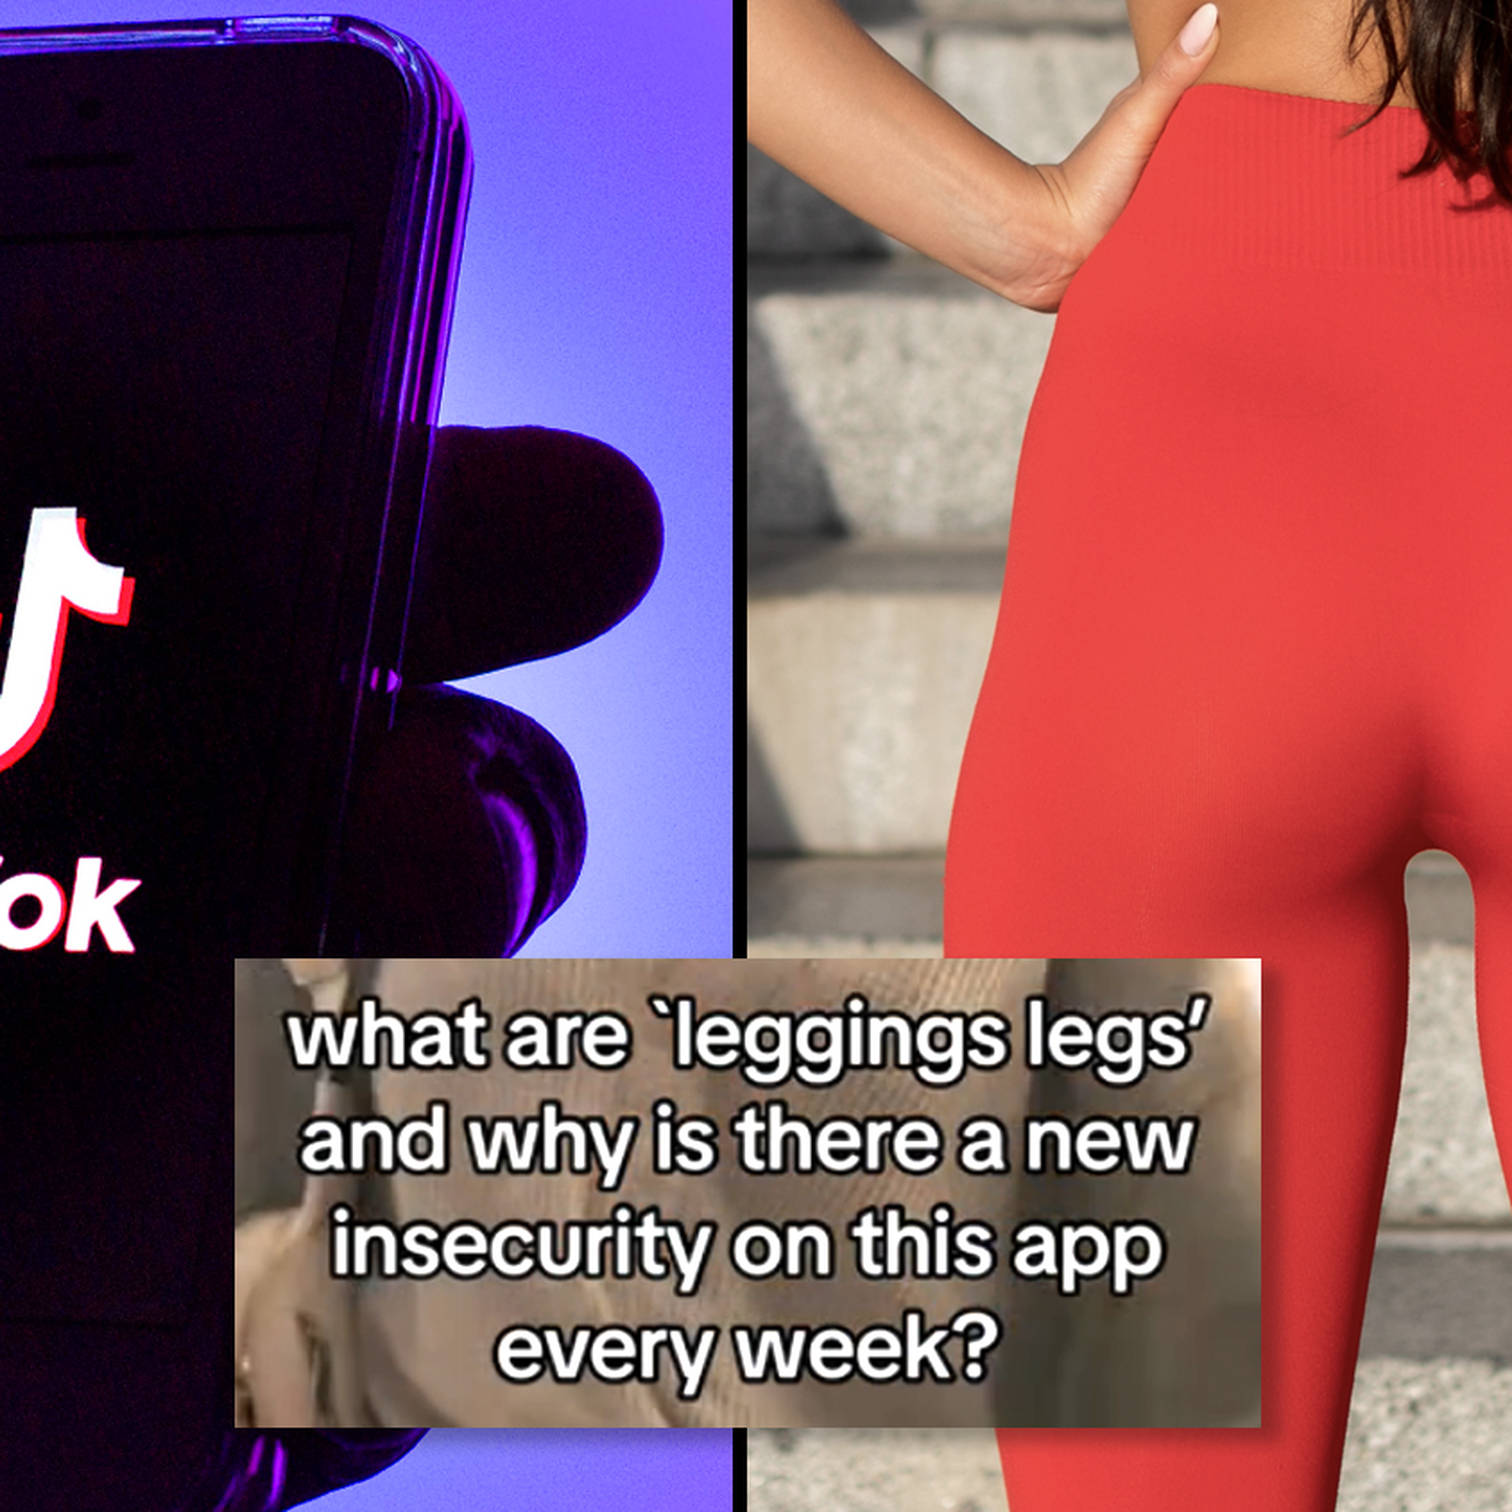 TikTok's 'Legging Legs' Controversy, Explained